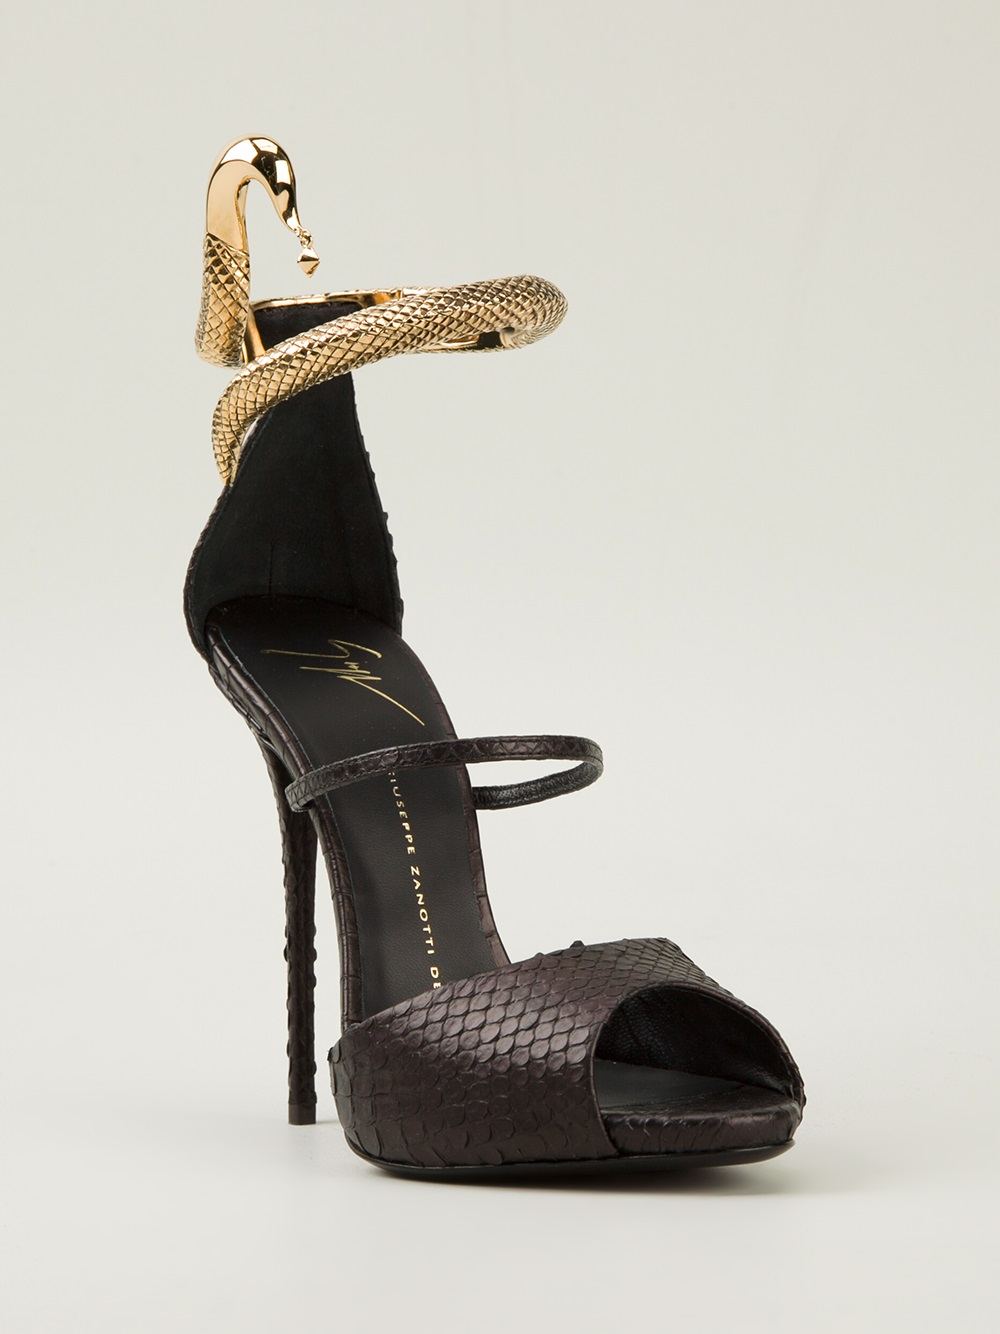 Lyst - Giuseppe Zanotti Snake Embellished Sandals in Black